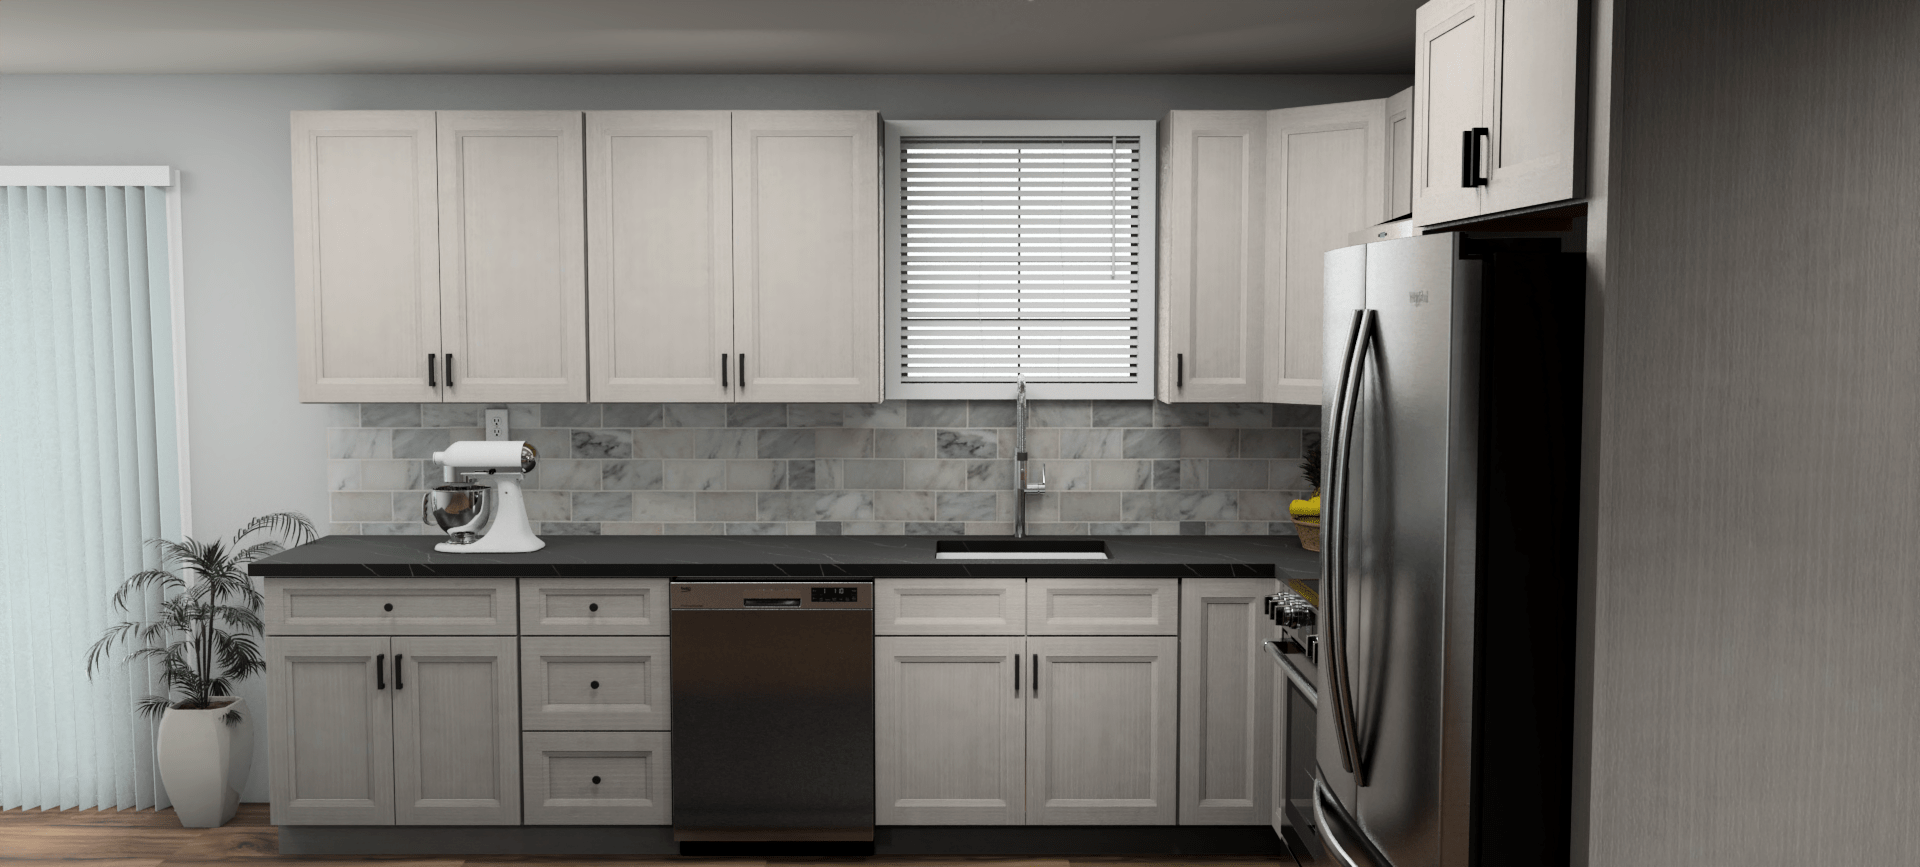 Fabuwood Allure Onyx Horizon 12 x 10 L Shaped Kitchen Side Layout Photo